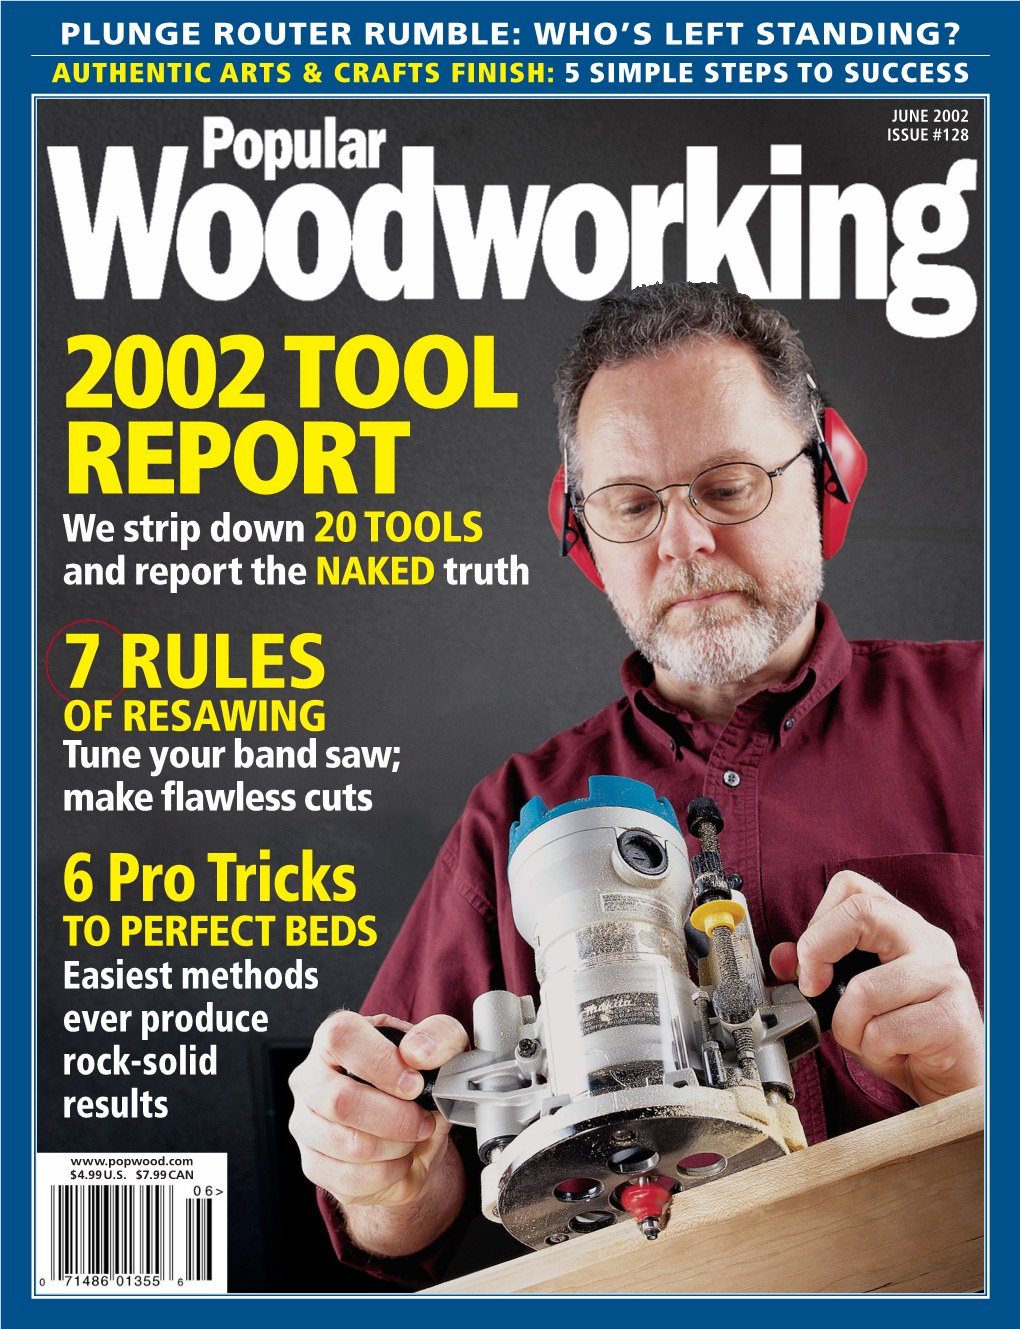 June 2002 Popular Woodworking